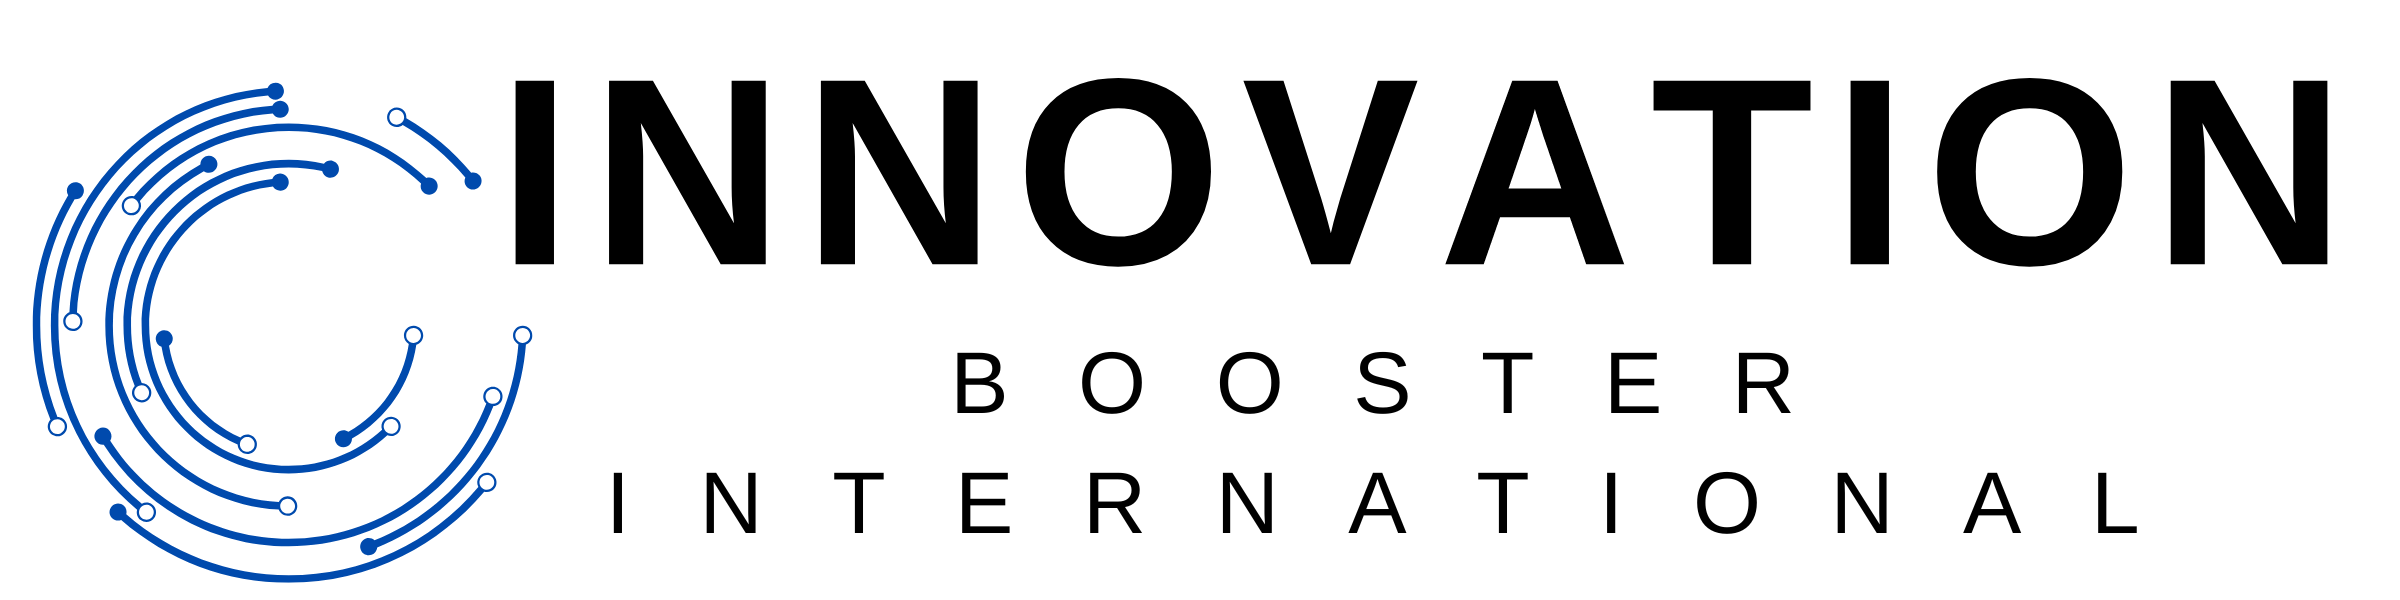 Innovation Booster International